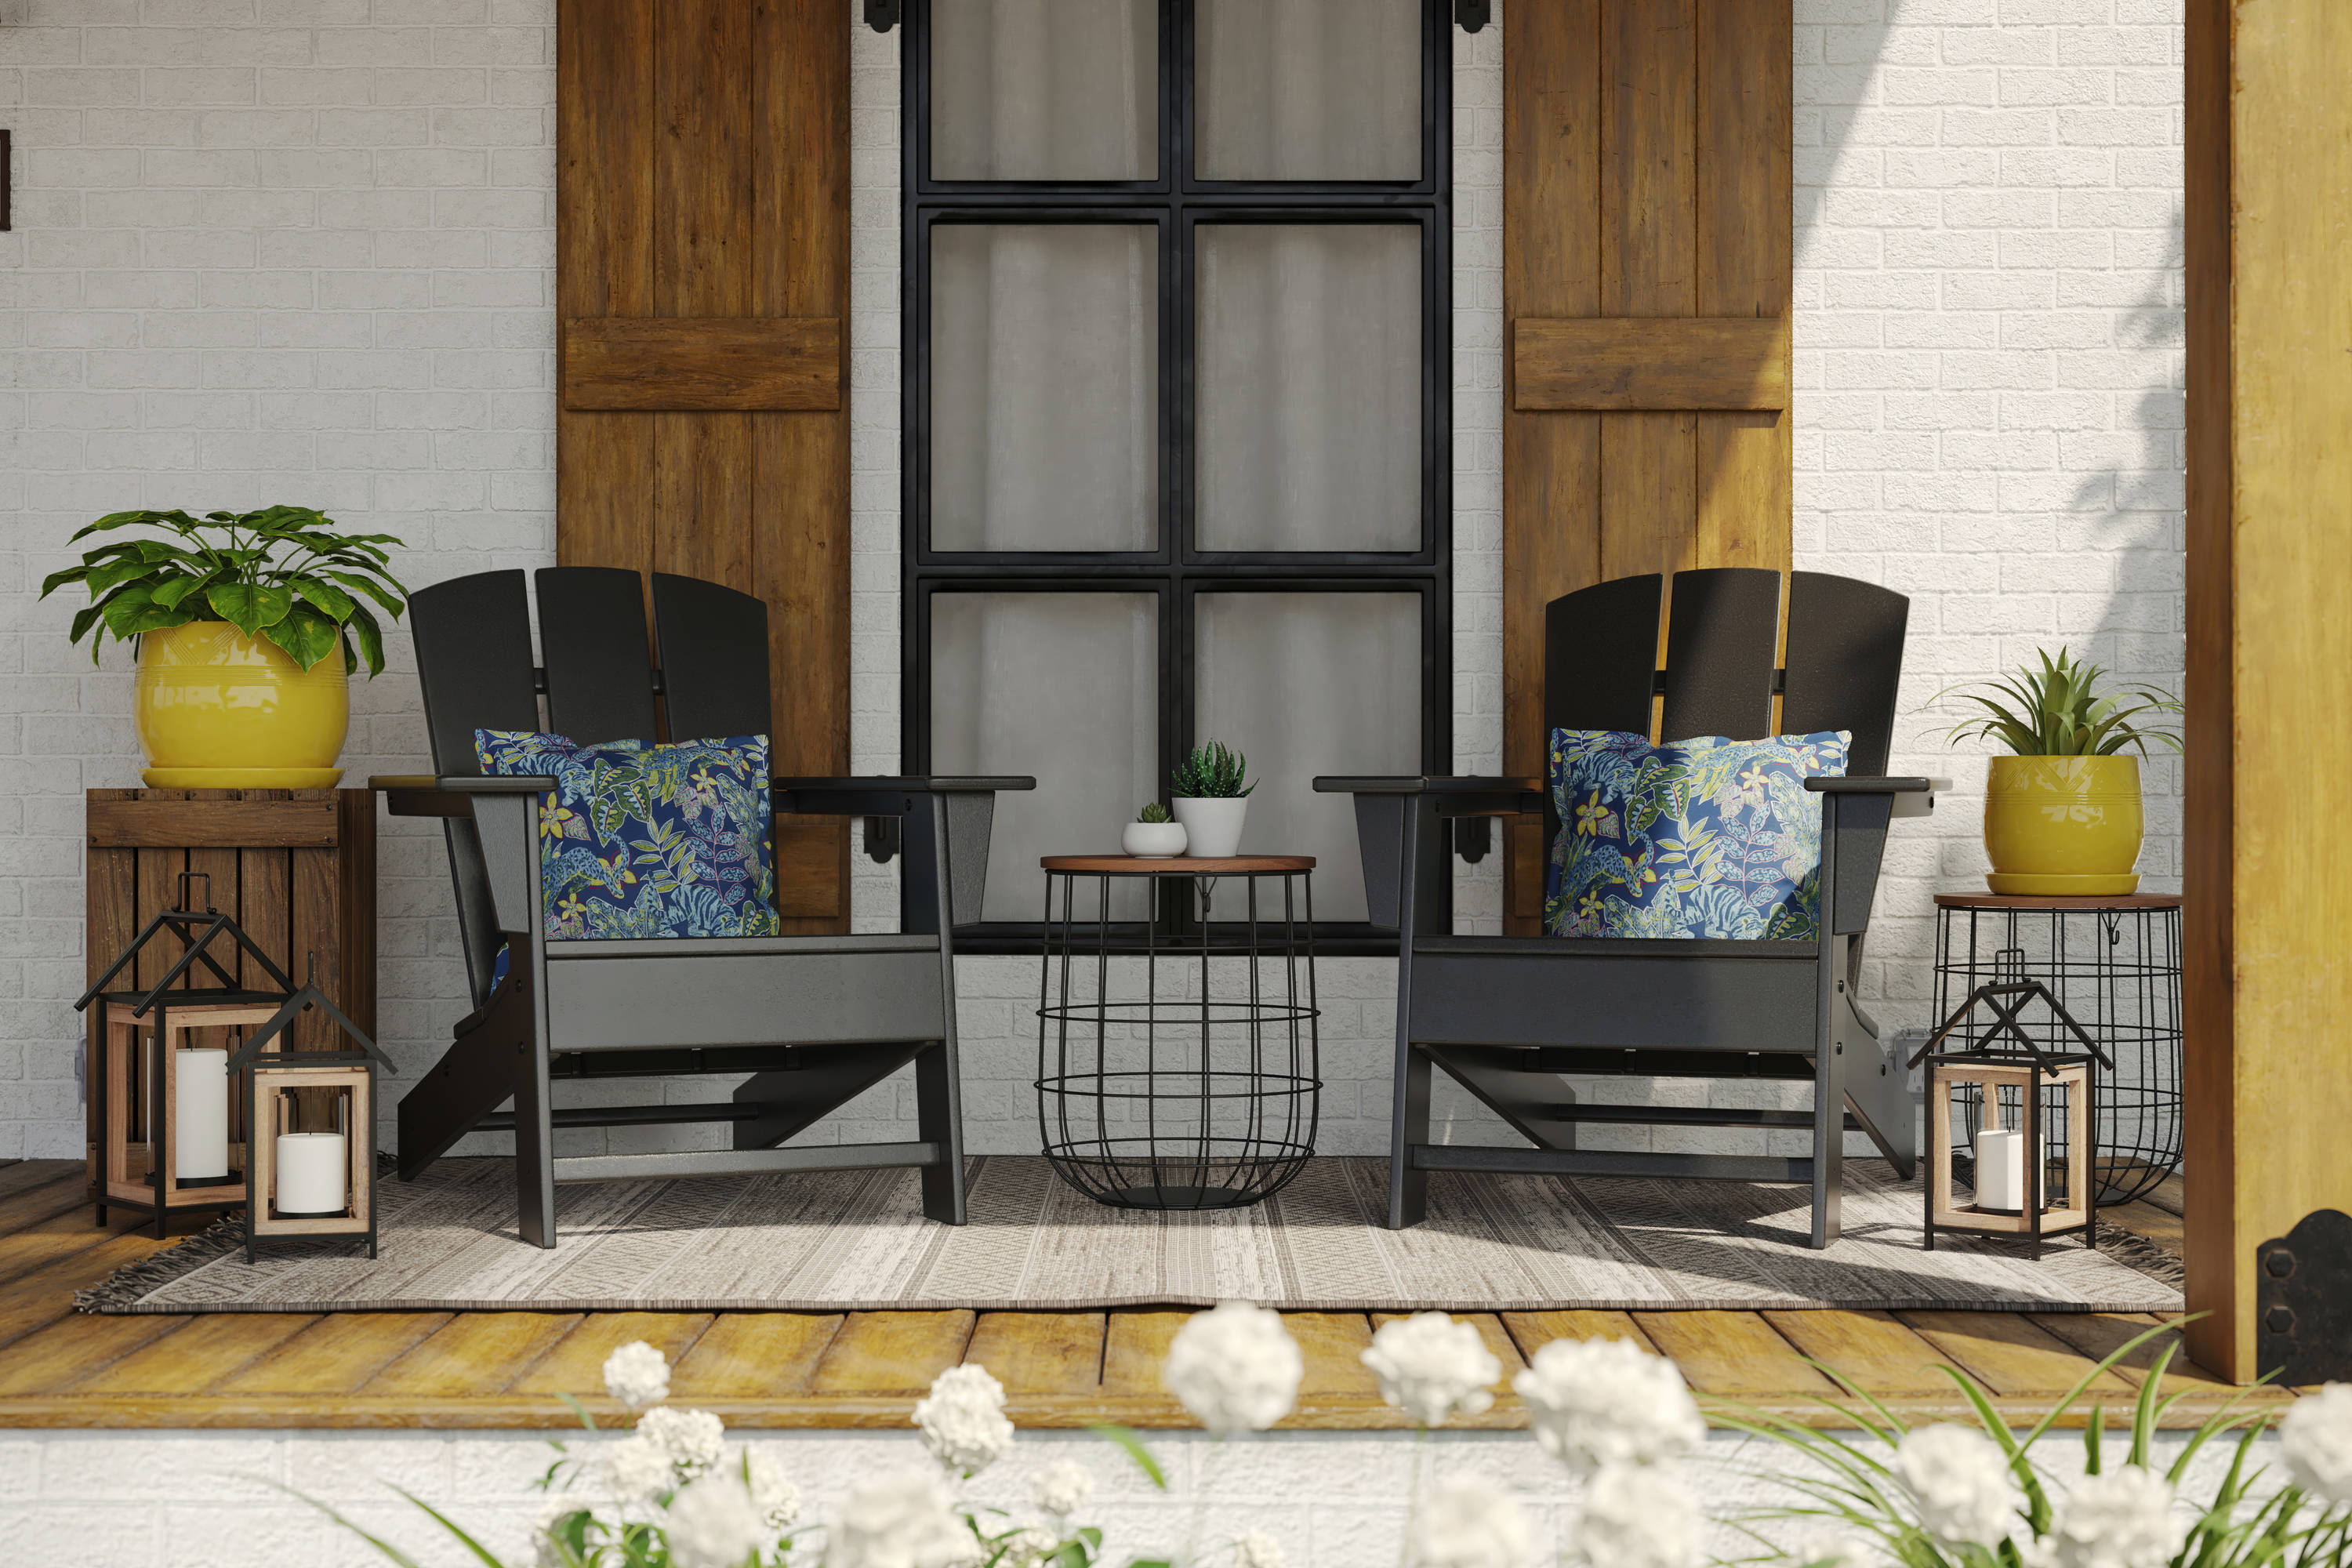 Conjunto de mesa y sillas polywood para jardín — Bricowork